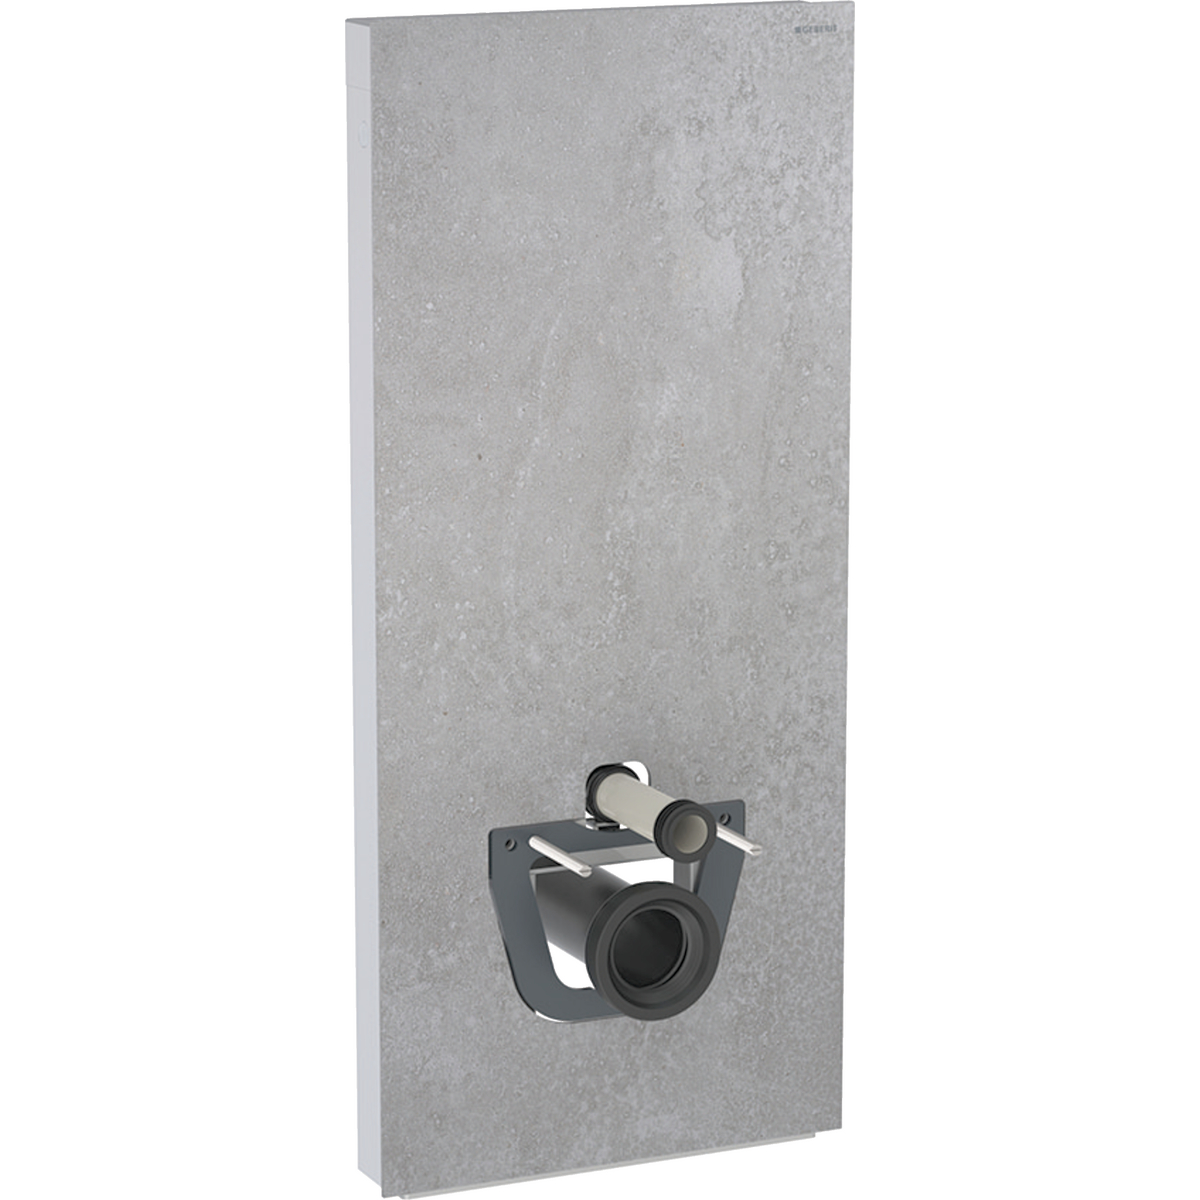 Monolith Sanitärmodul für Wand-WC, 114 cm, Frontverkleidung aus Steinzeug: Steinzeug Betonoptik, Aluminium